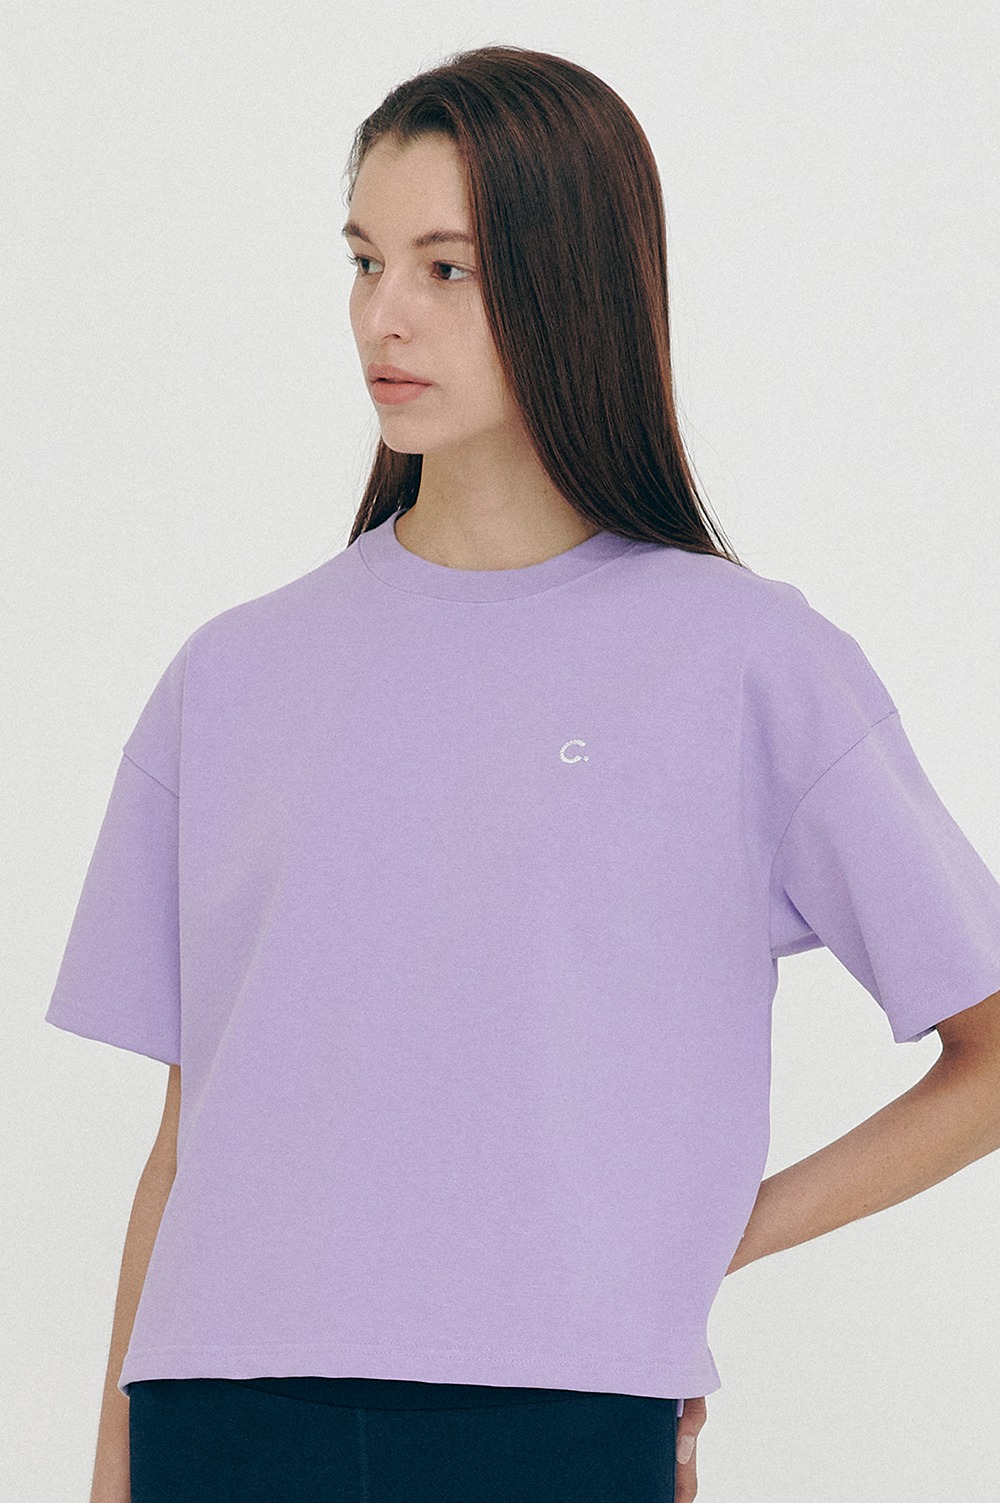 clove - [SS21 clove] Logo Short T-Shirt Lavender